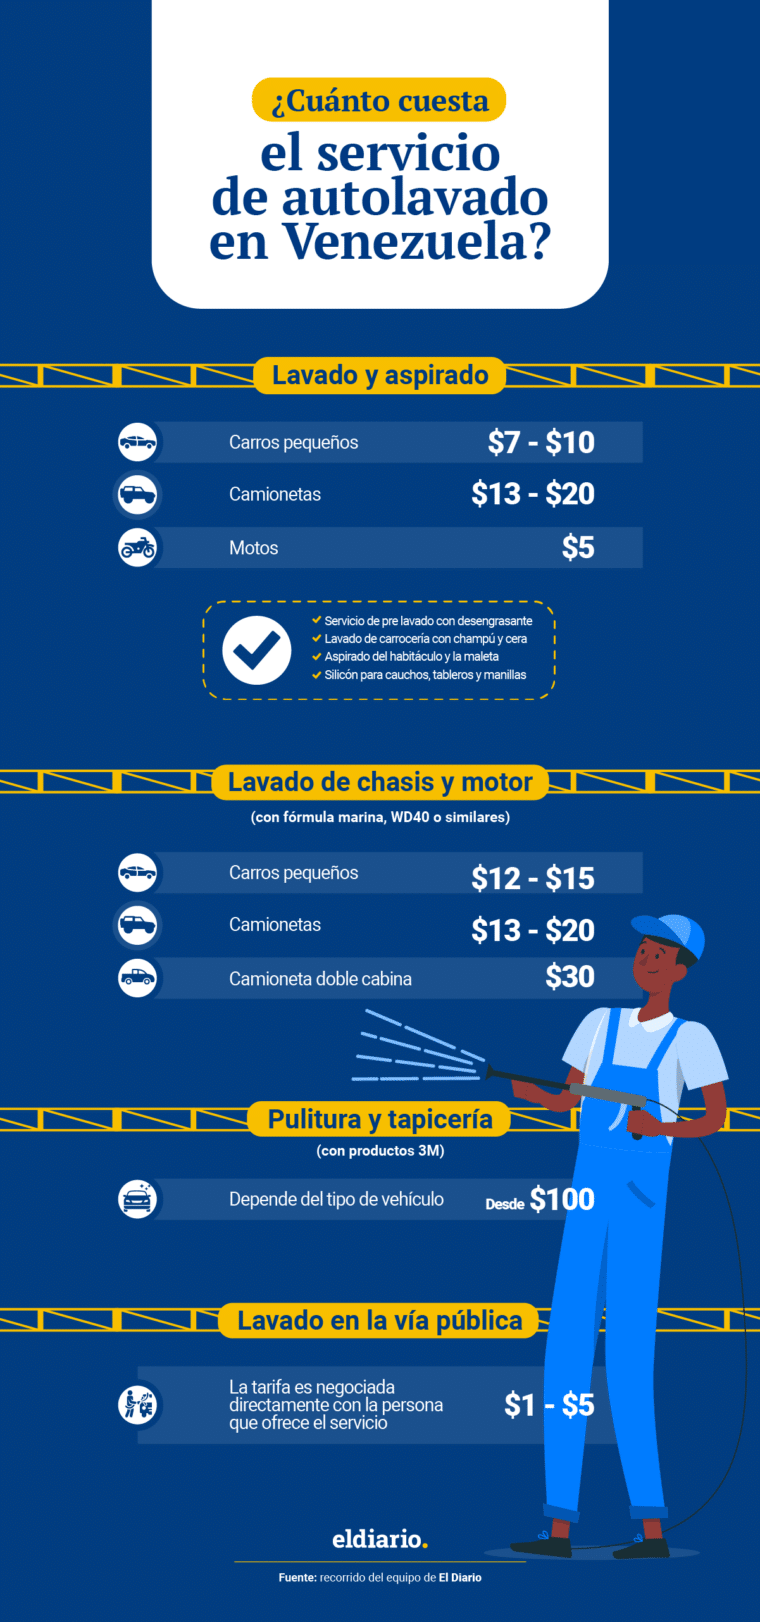 ¿Cuánto cuesta el servicio de autolavado en Venezuela?